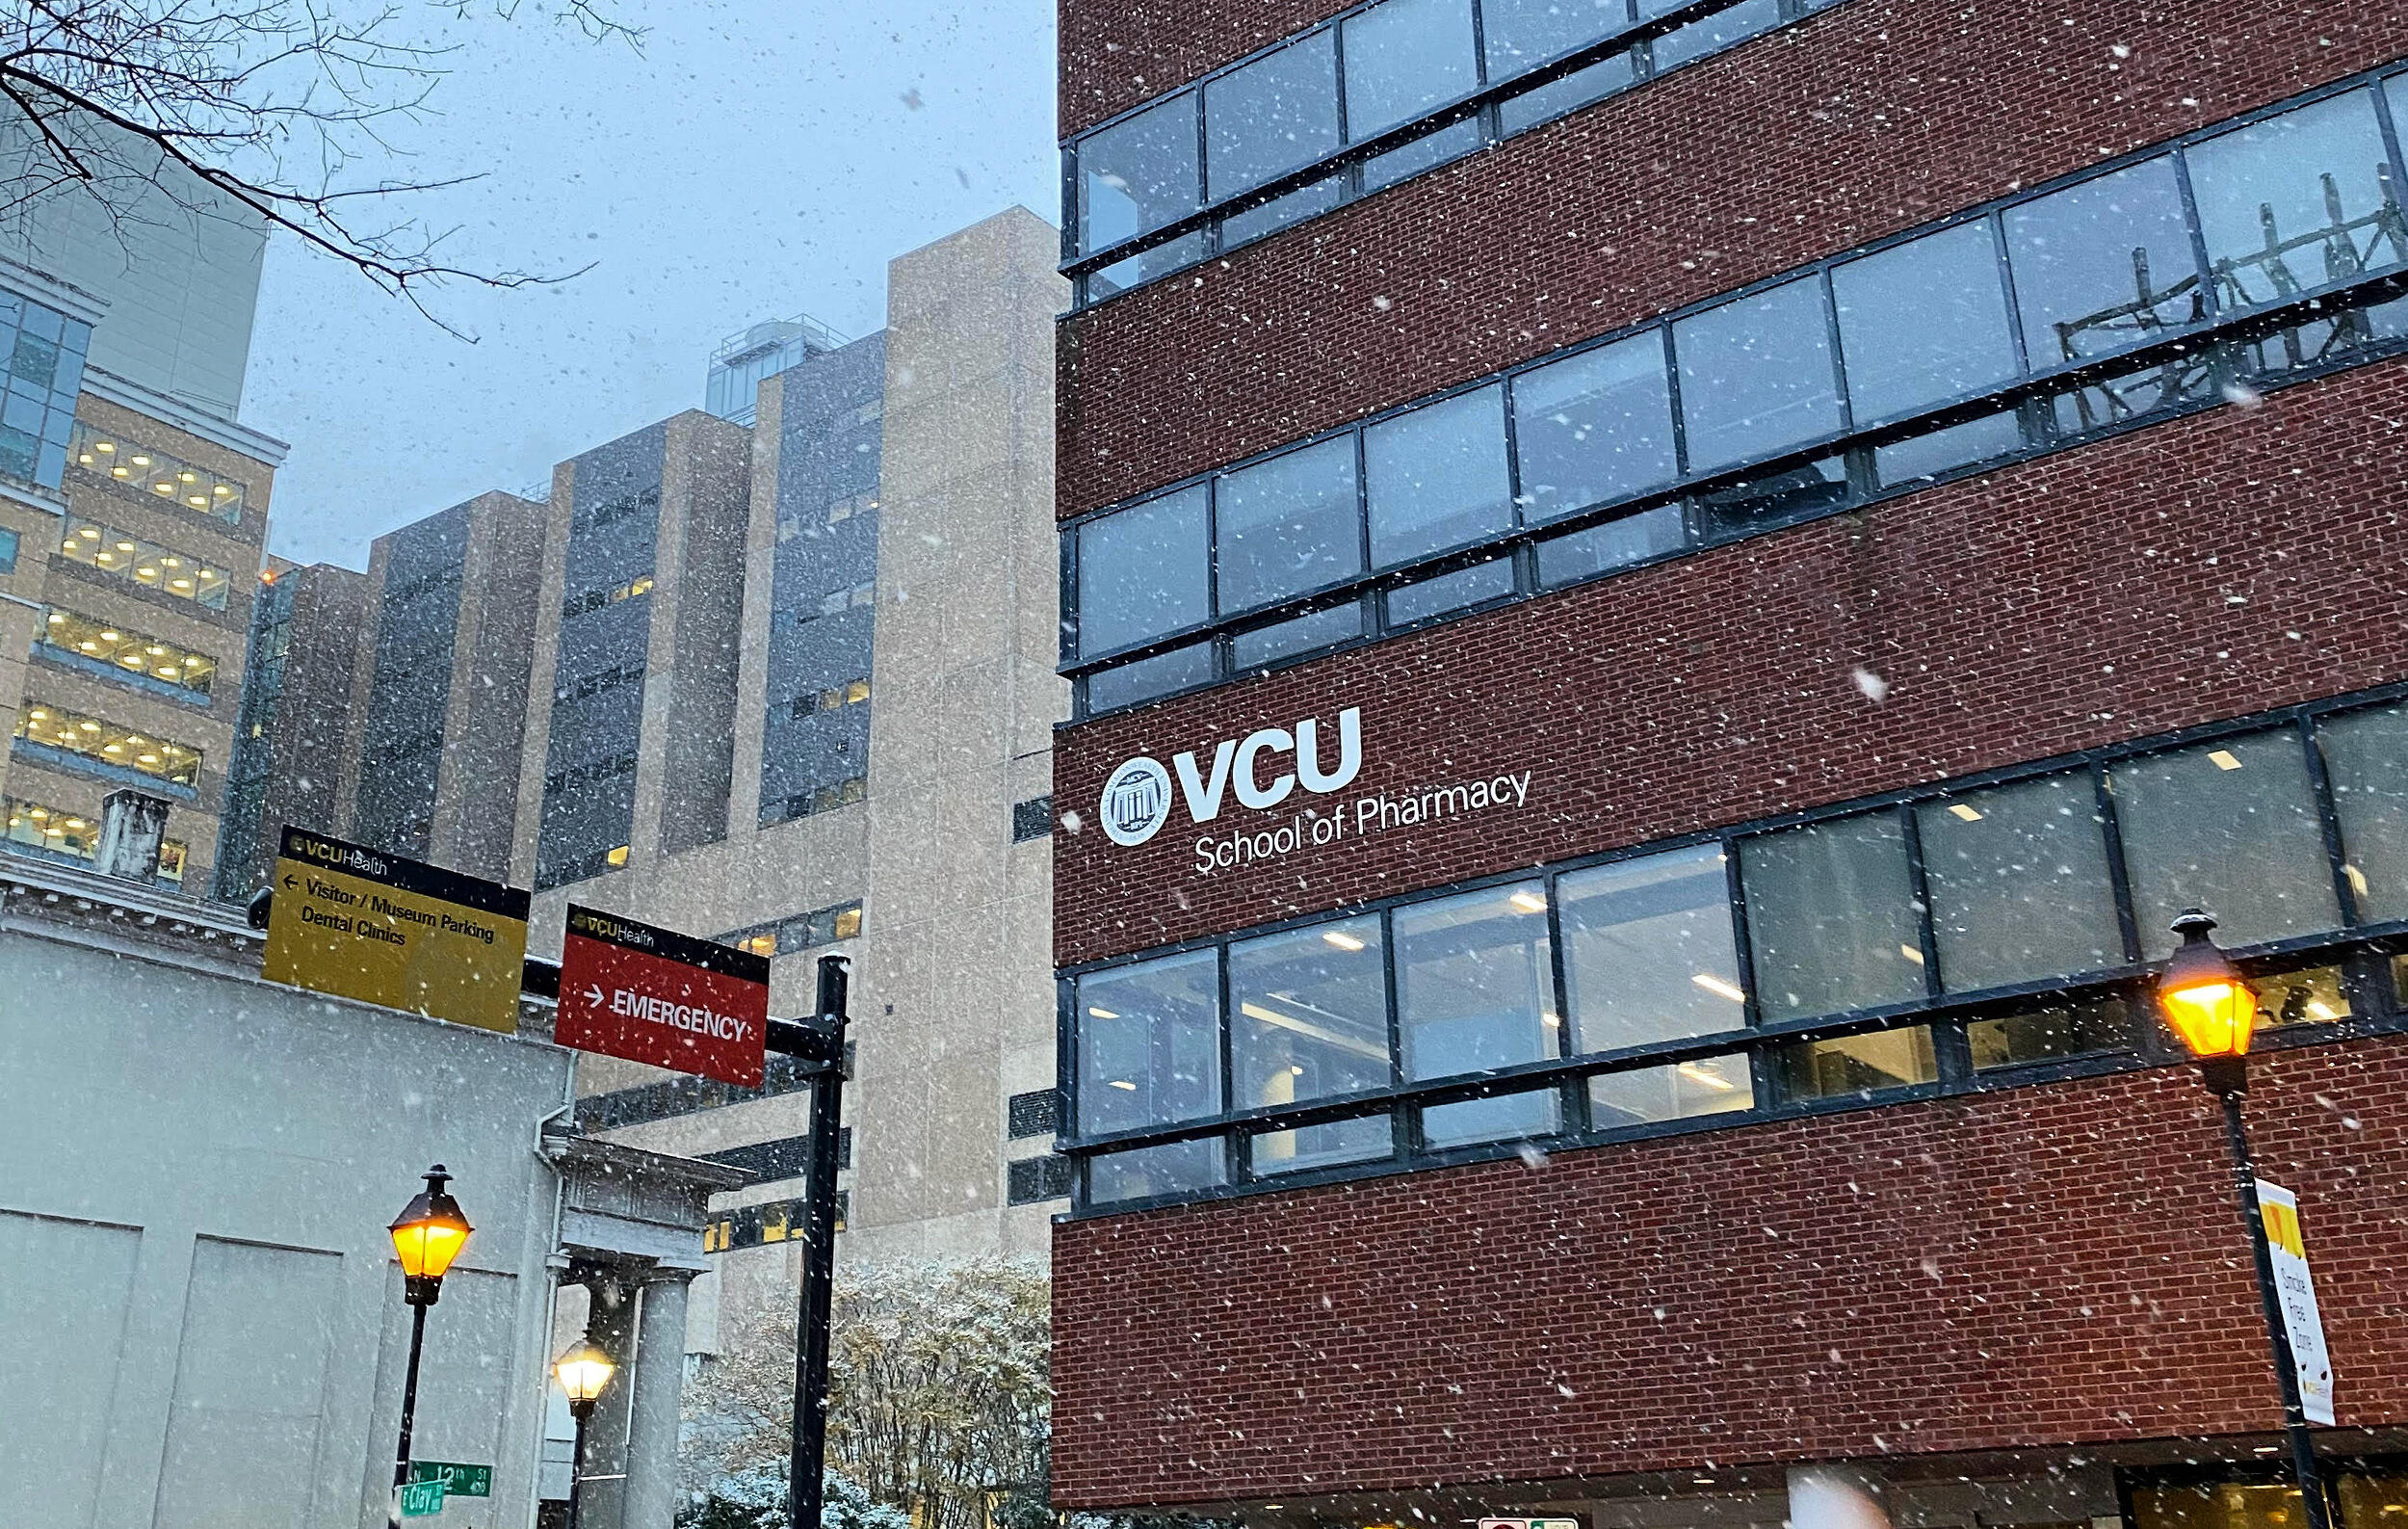 School of Pharmacy in the snow